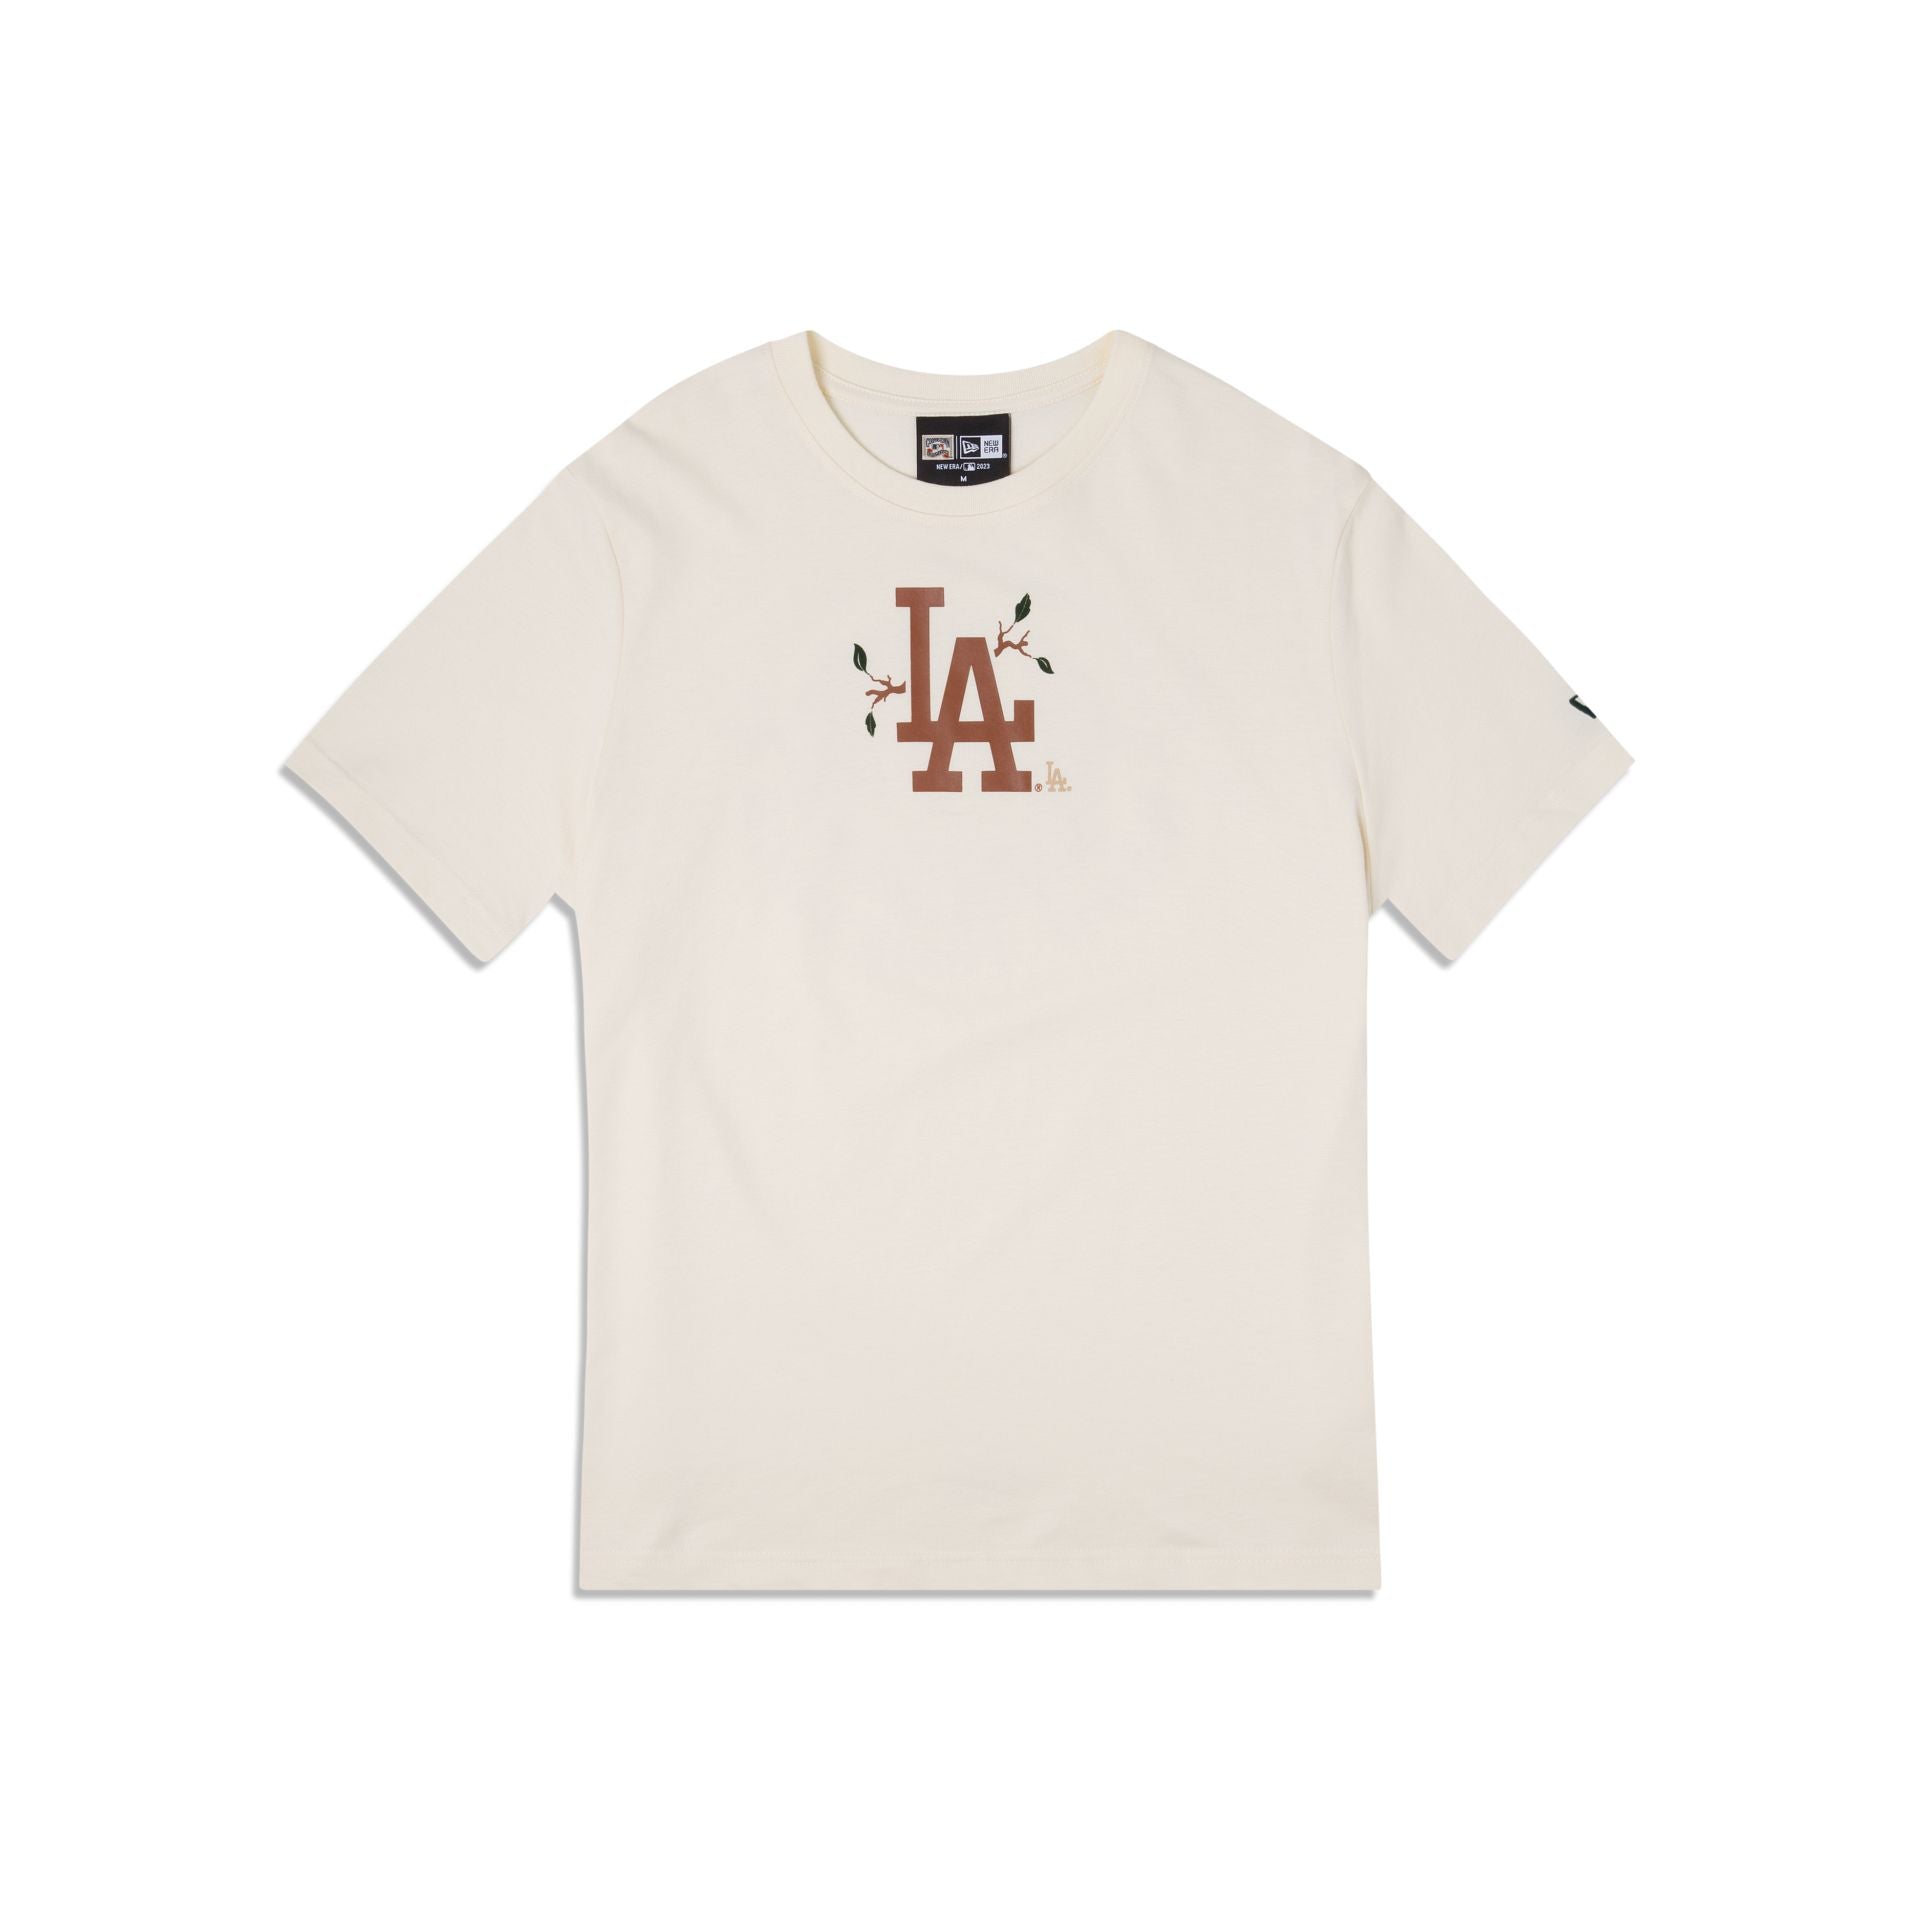 Los Angeles Dodgers New Era Women's City Connect Plus Size T-Shirt